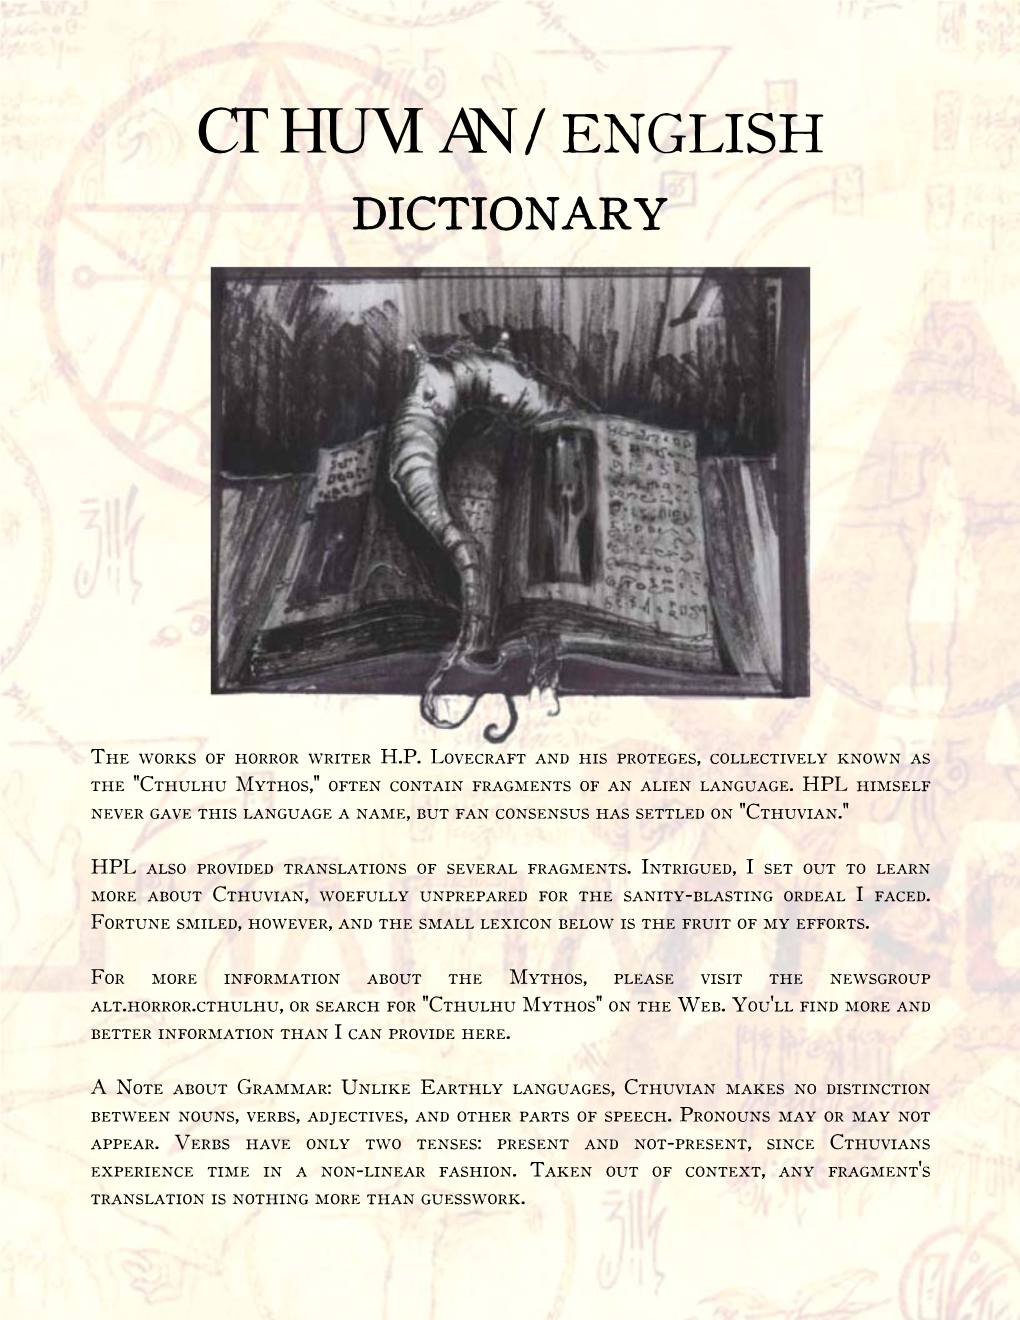 Cthuvian / English Dictionary